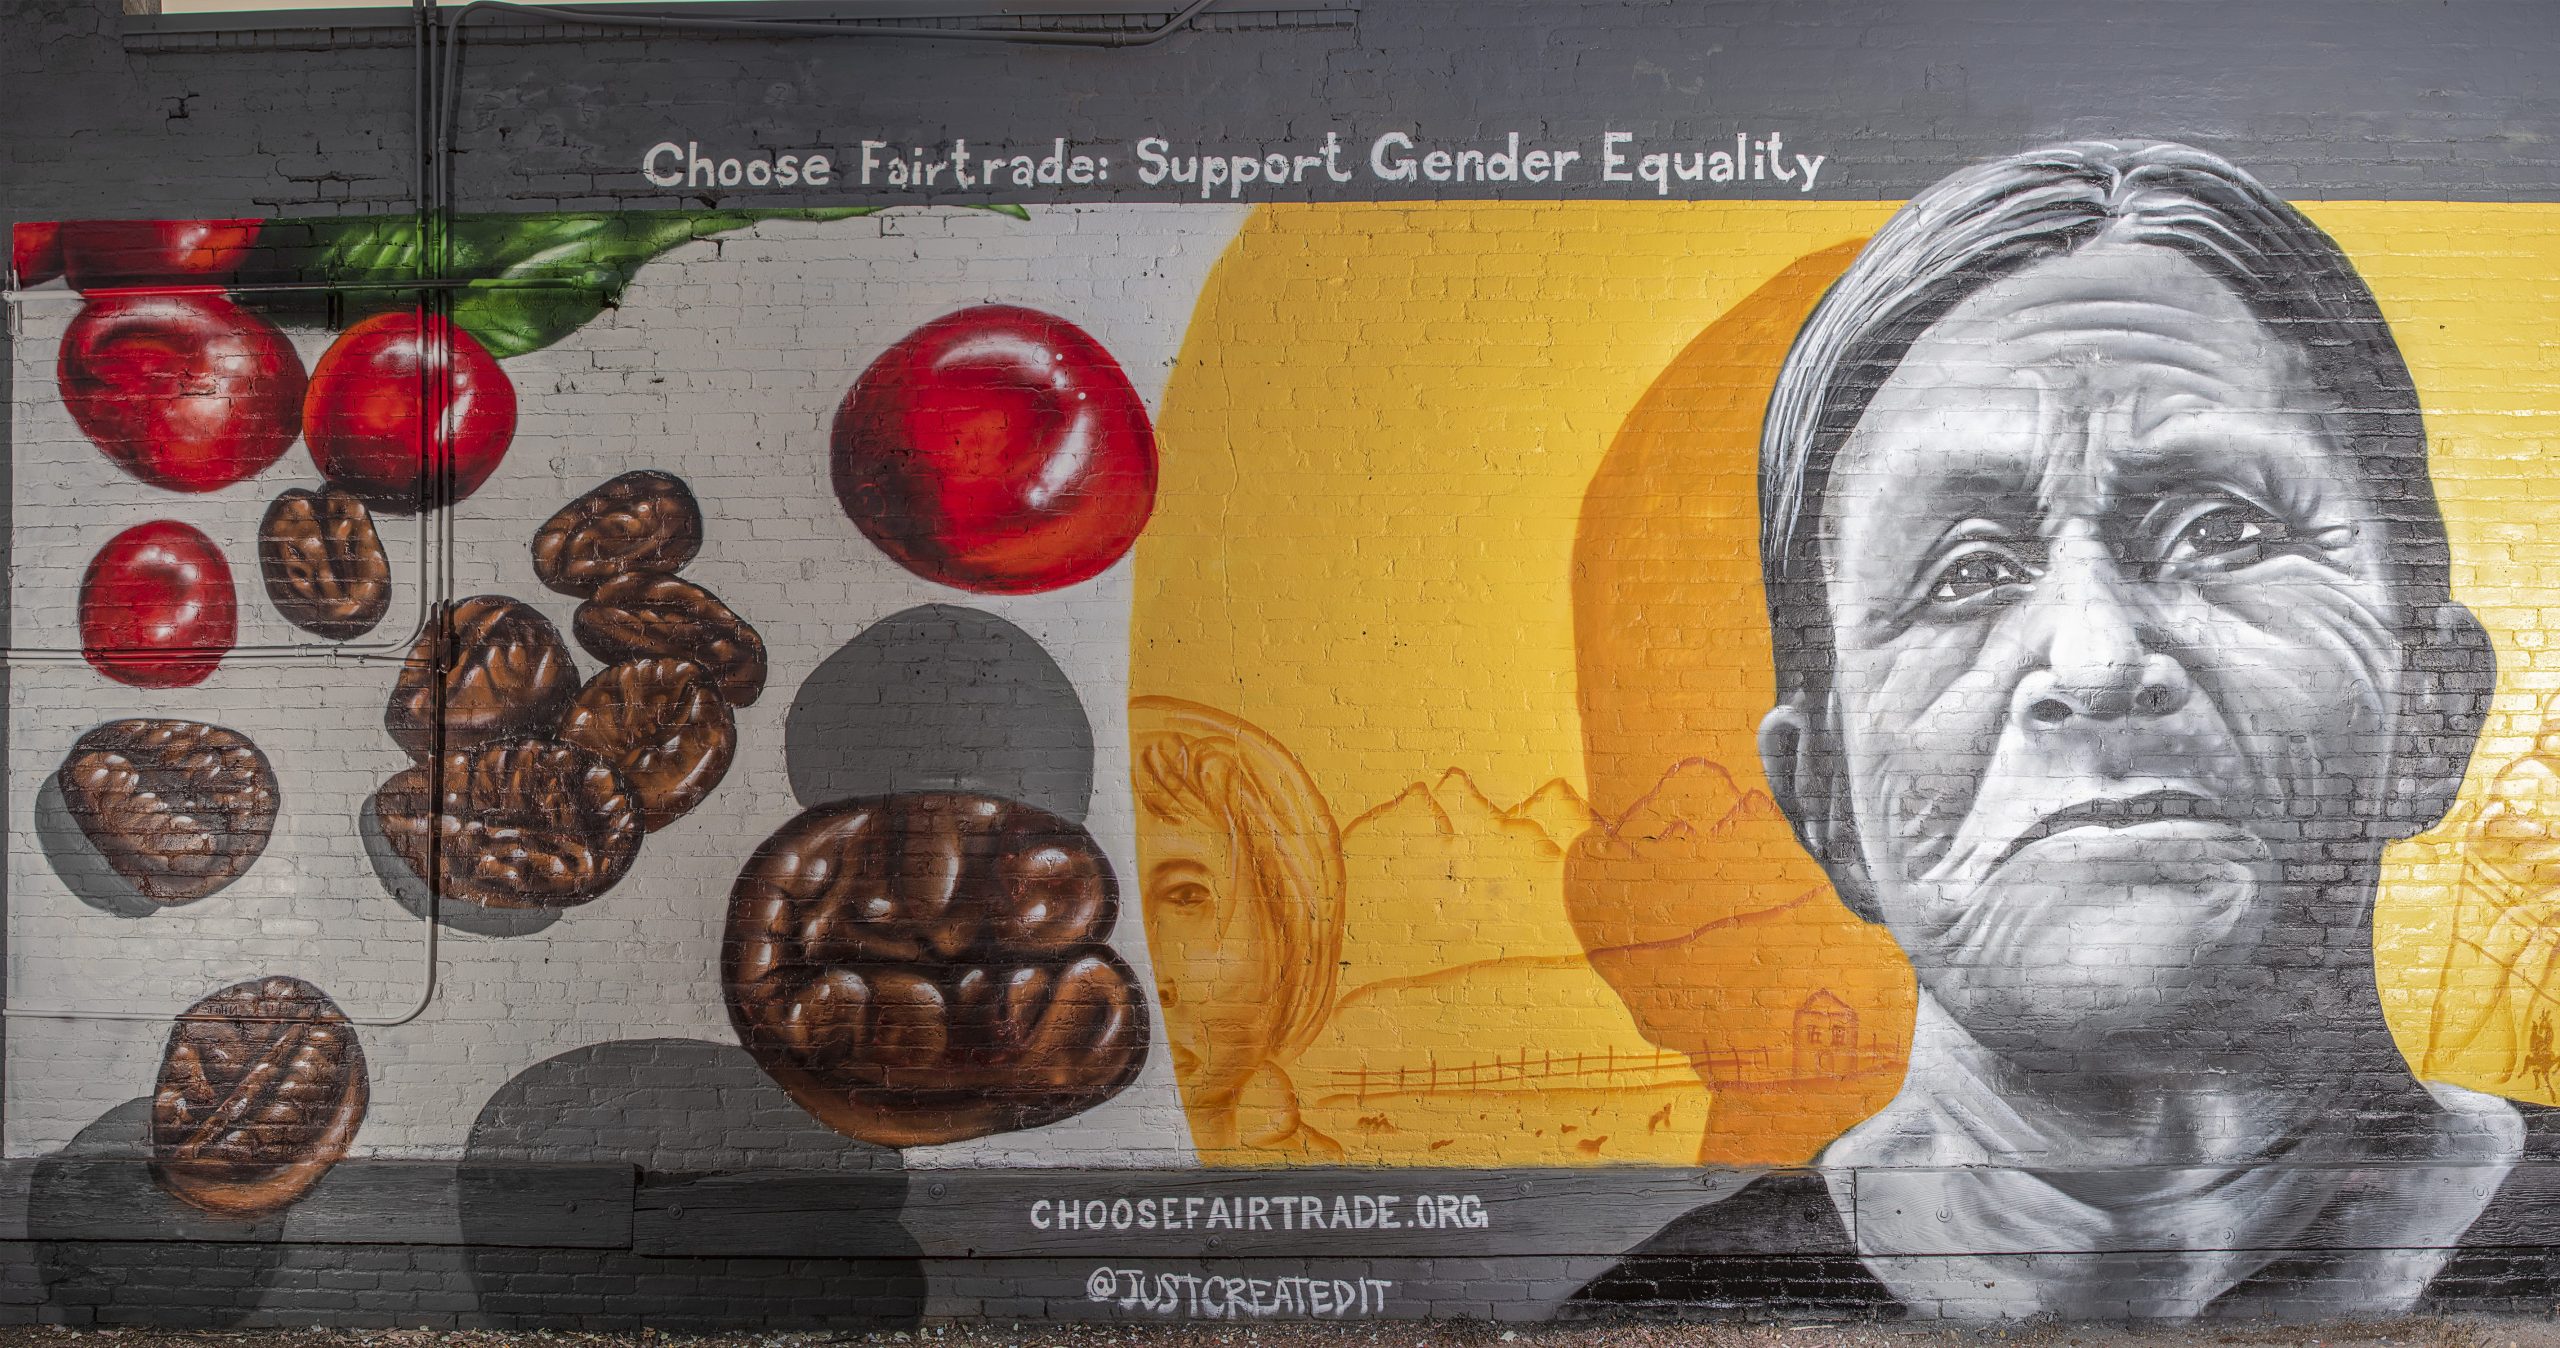 Denver Fairtrade mural